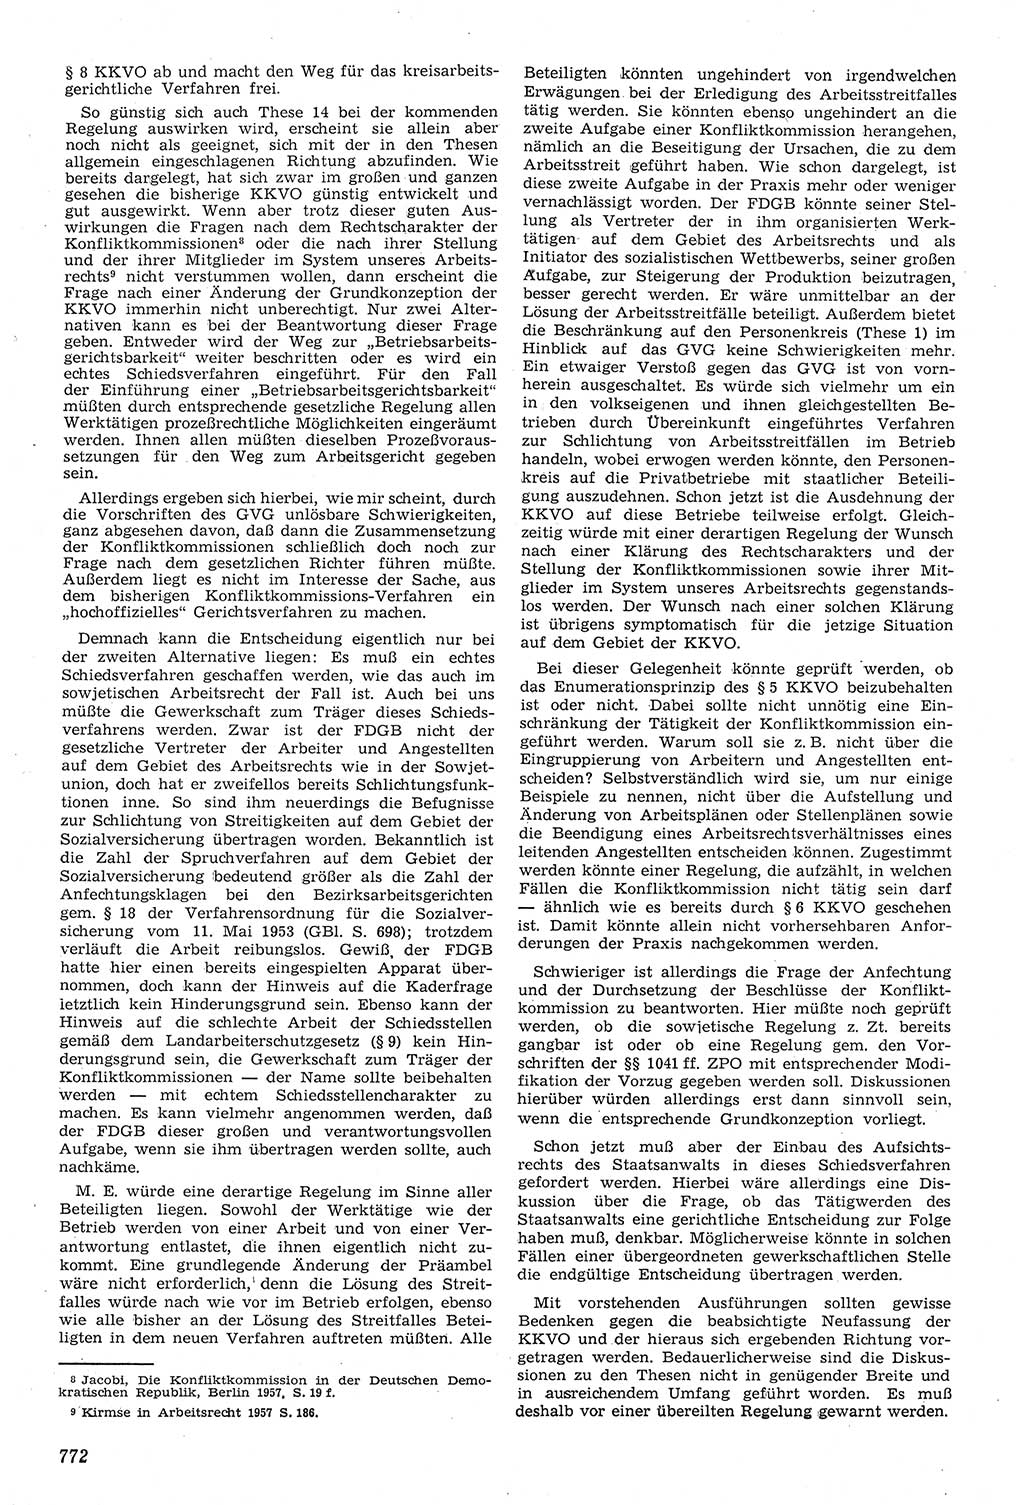 Neue Justiz (NJ), Zeitschrift für Recht und Rechtswissenschaft [Deutsche Demokratische Republik (DDR)], 11. Jahrgang 1957, Seite 772 (NJ DDR 1957, S. 772)